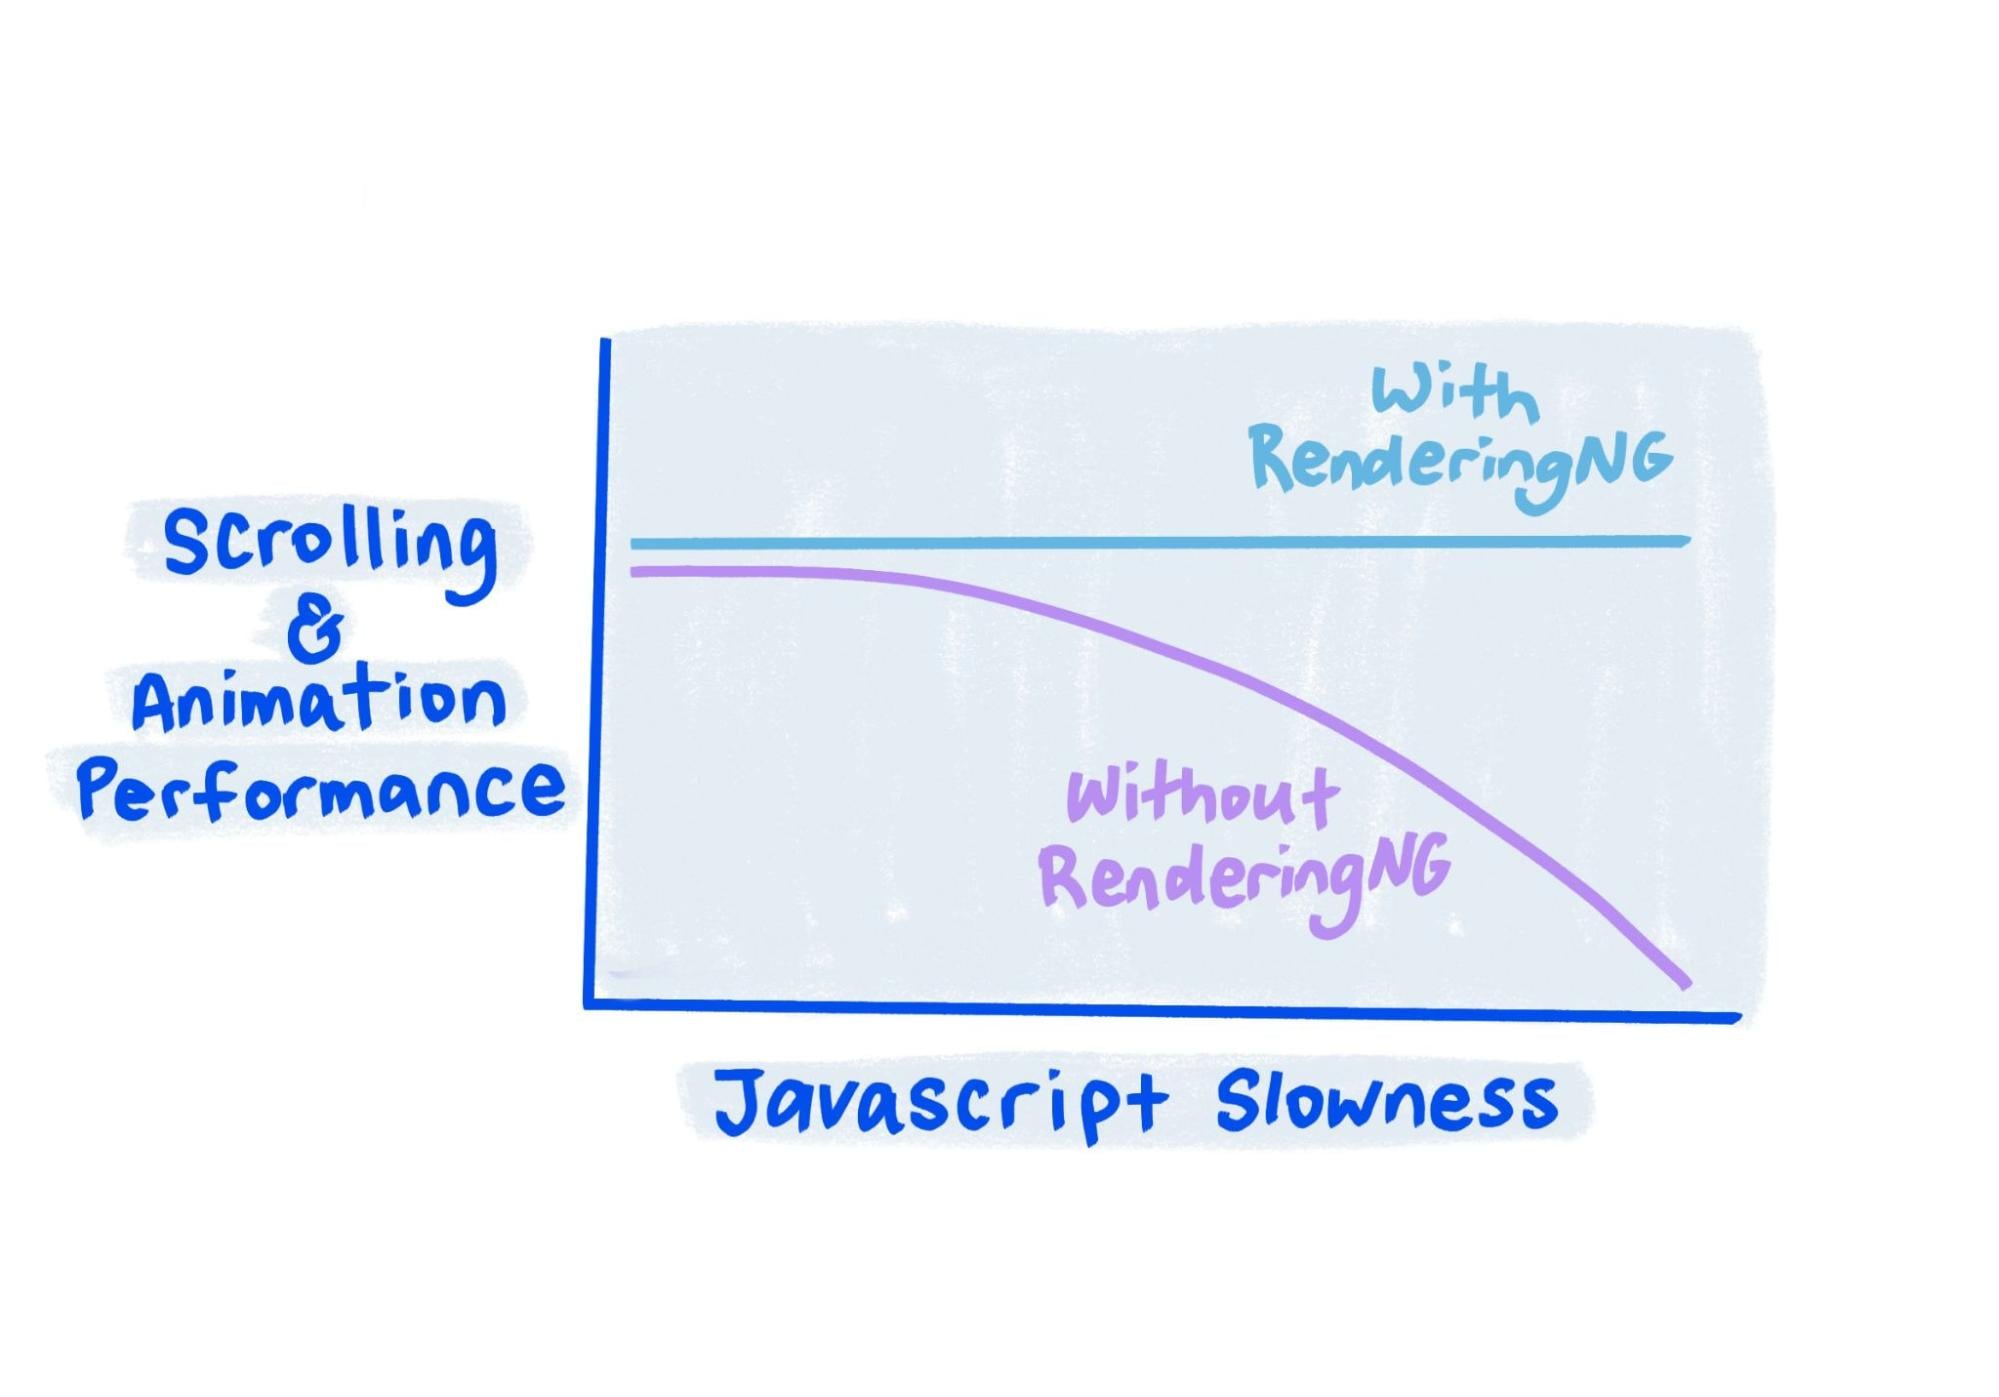 スケッチから、RenderingNG では JavaScript が非常に遅い場合でもパフォーマンスが安定していることがわかります。